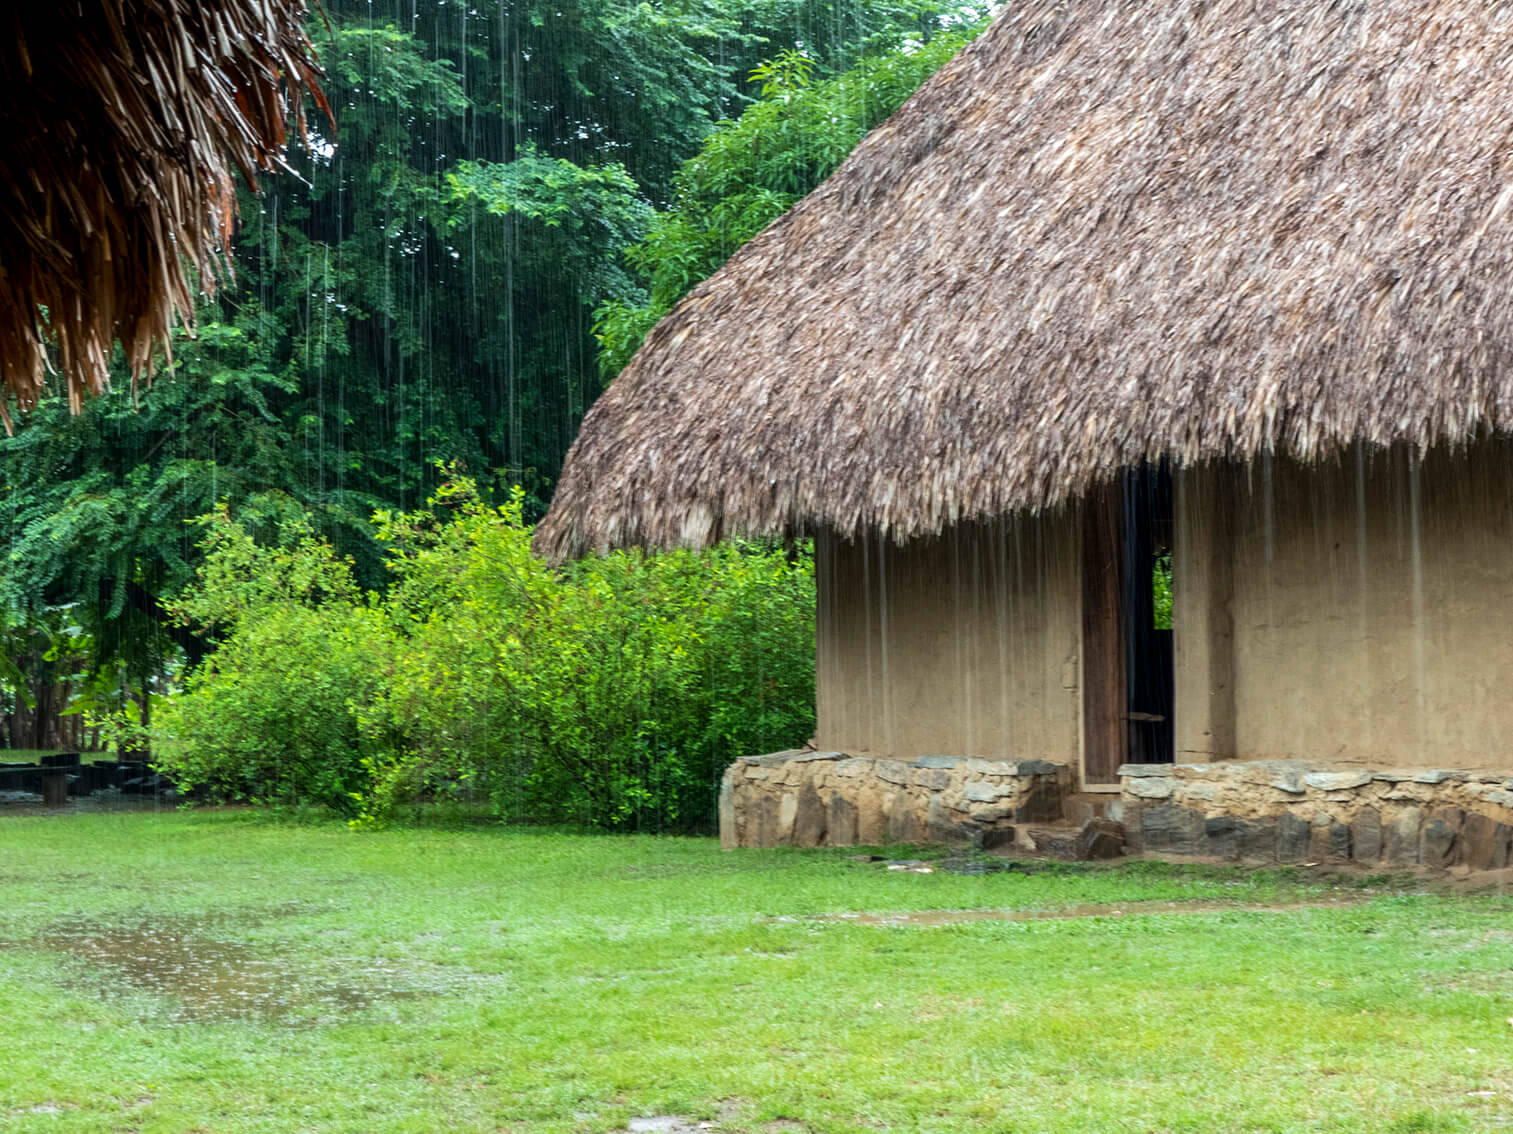 Llueve sobre un poblado indígena arhuaco. Una casa de techo de paja recibe el agua que cae a chorros sobre el pasto.